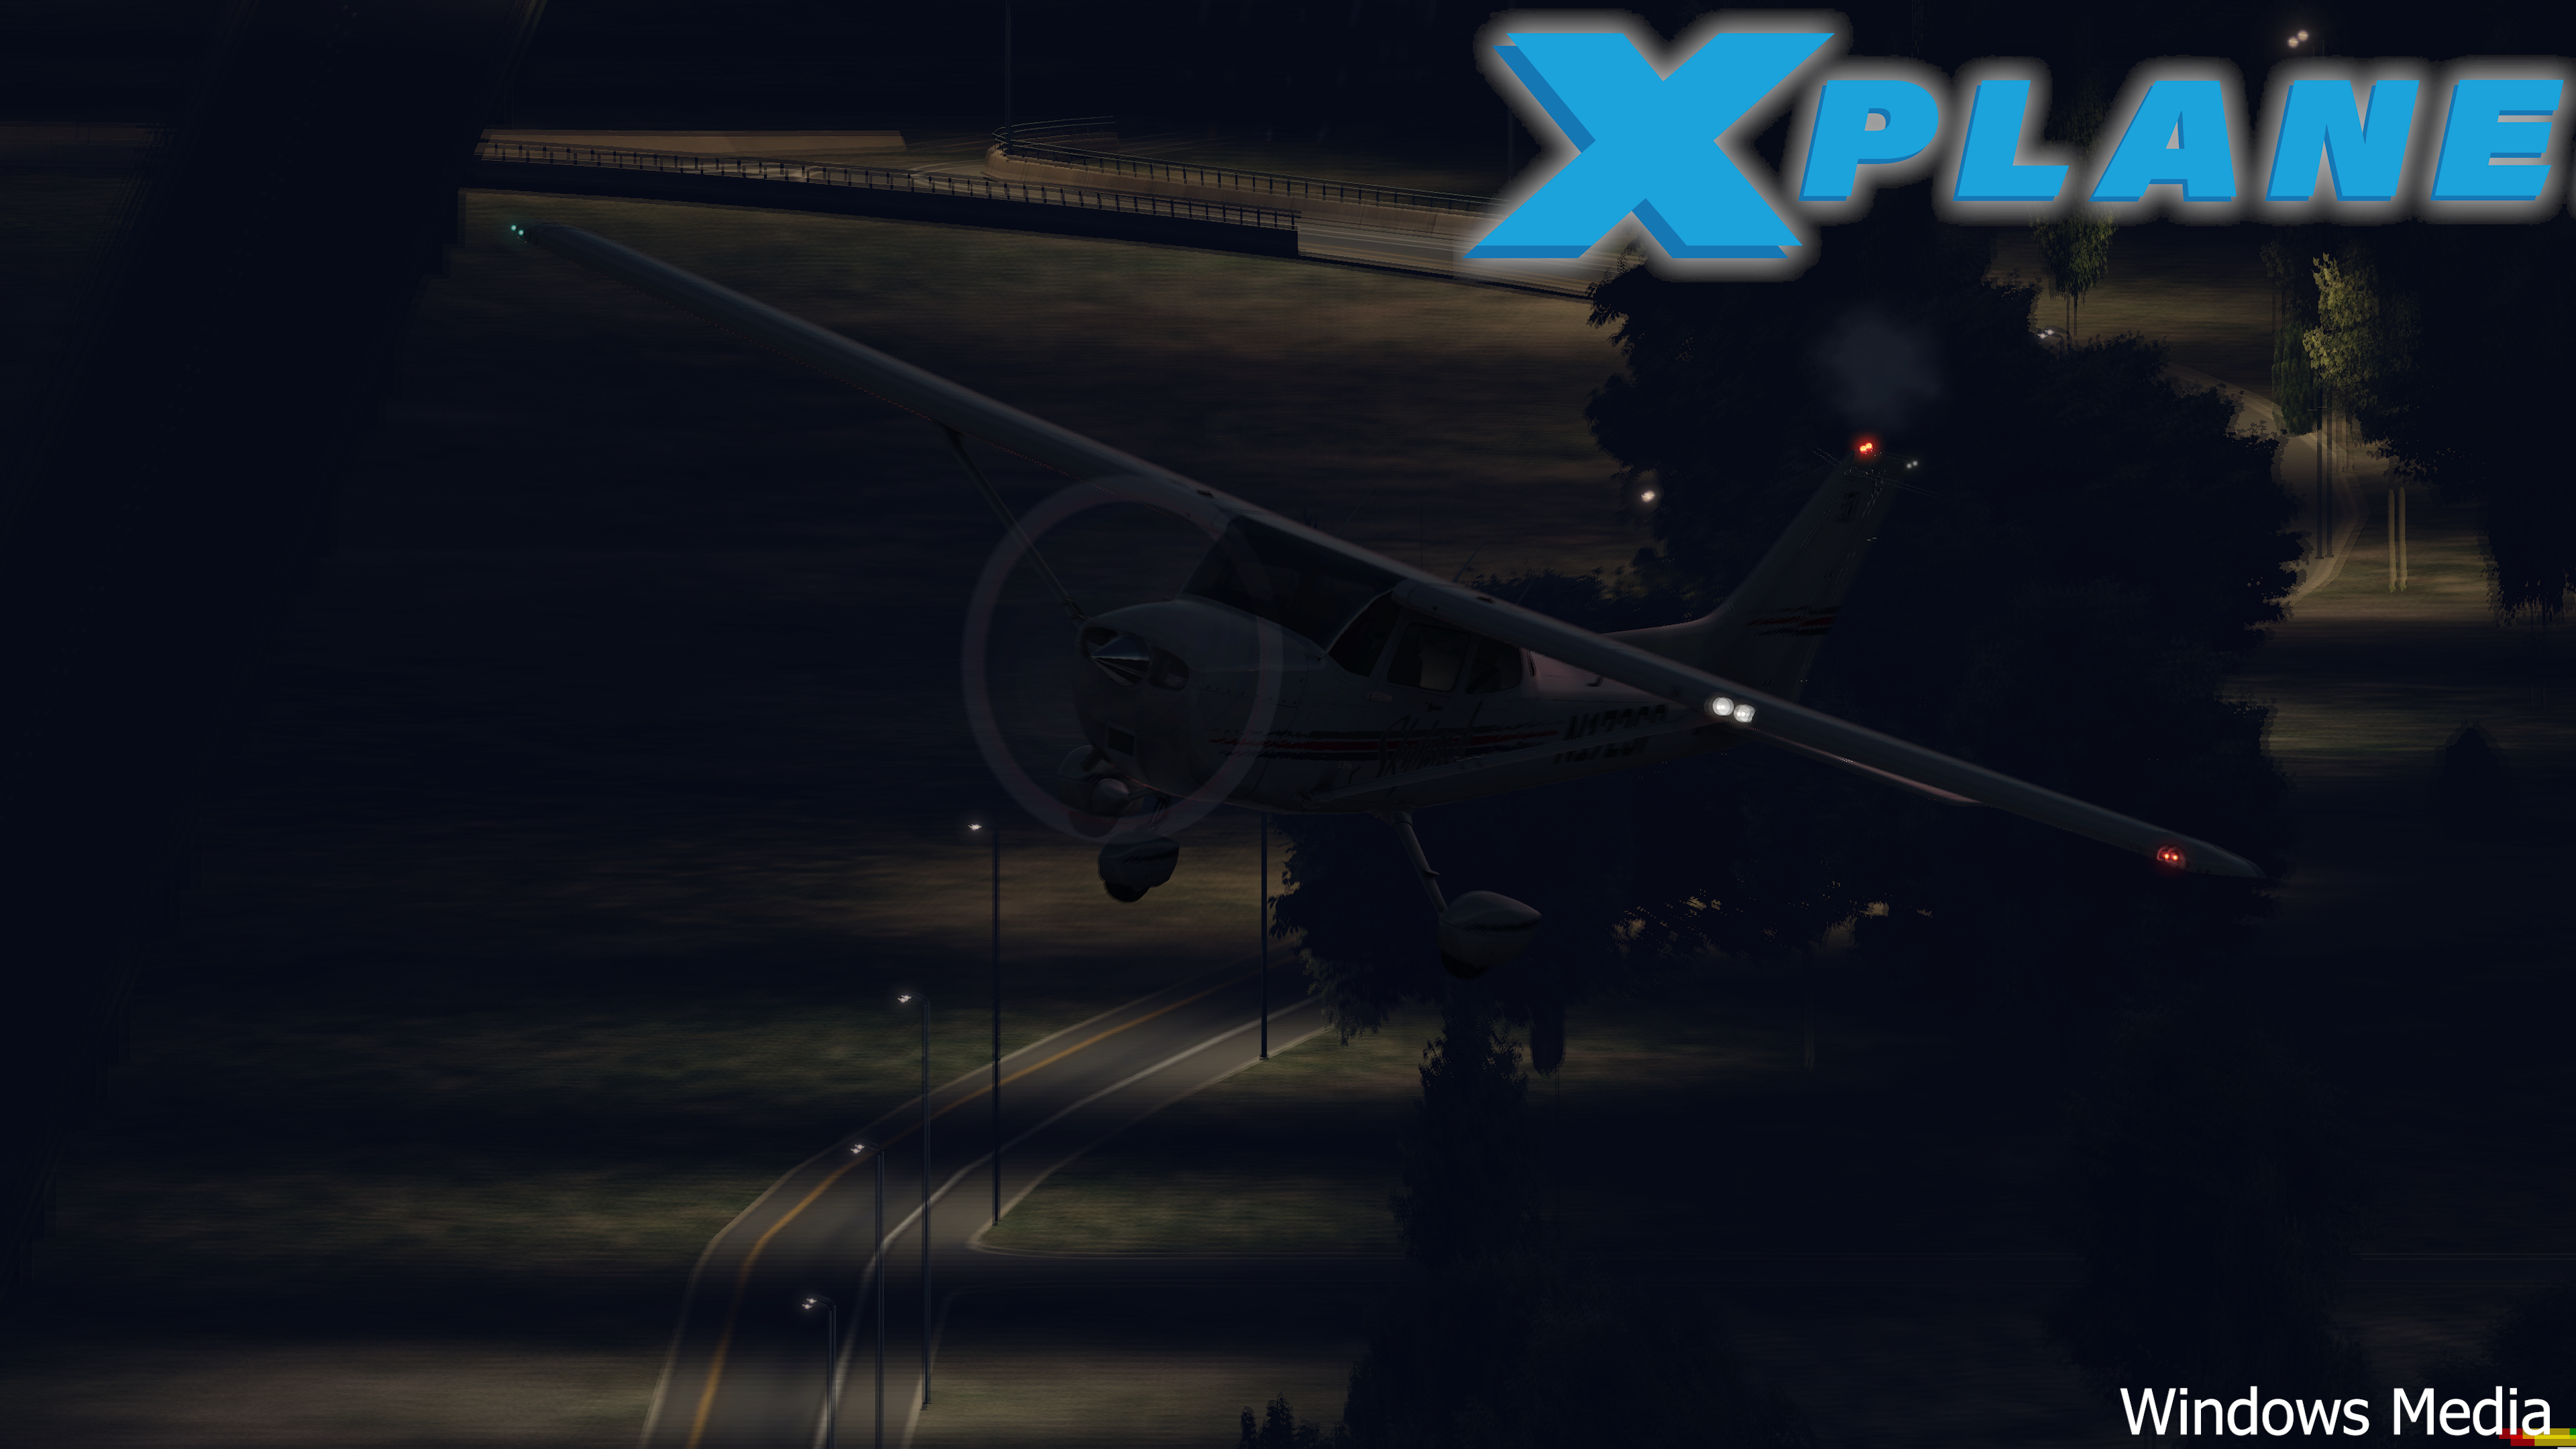 4K Custom Loading Screen And Xplane Wallpaper Plane.Org Forum